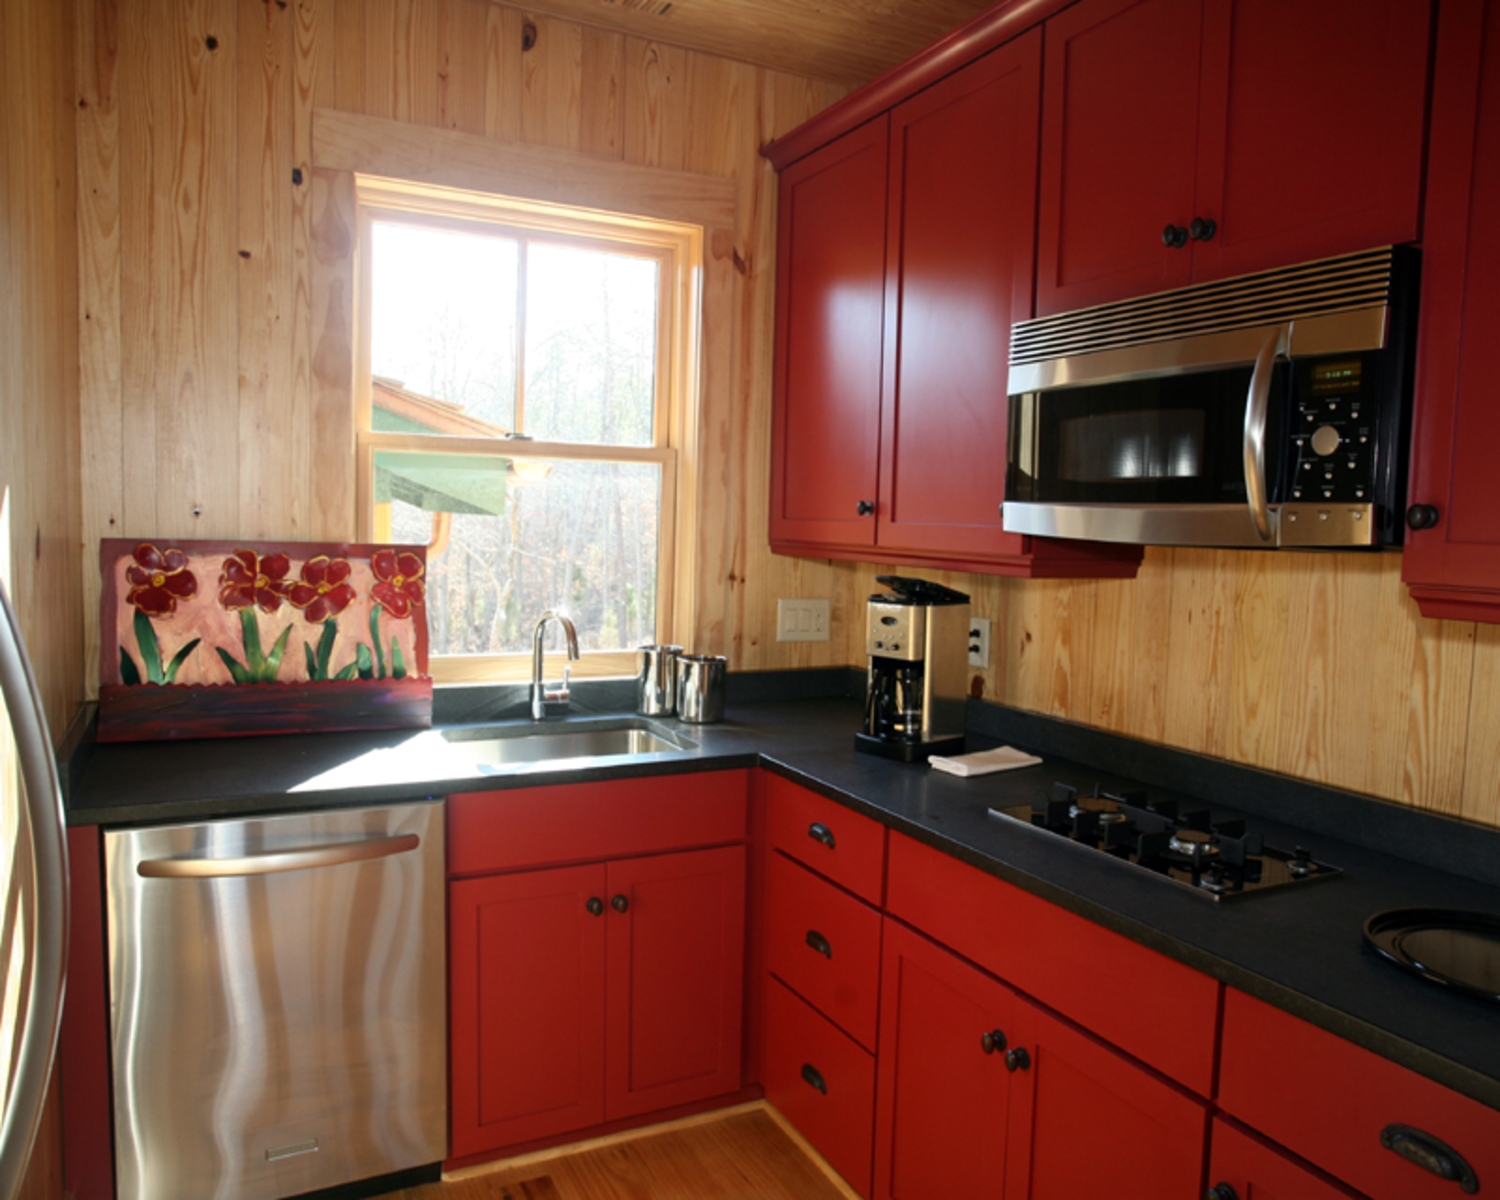 Квадратный метр кухонного гарнитура. Кухня в деревянном доме. Кухня в маленьком деревянном доме. Угловая кухня в деревянном доме. Малогабаритные кухни с окном.